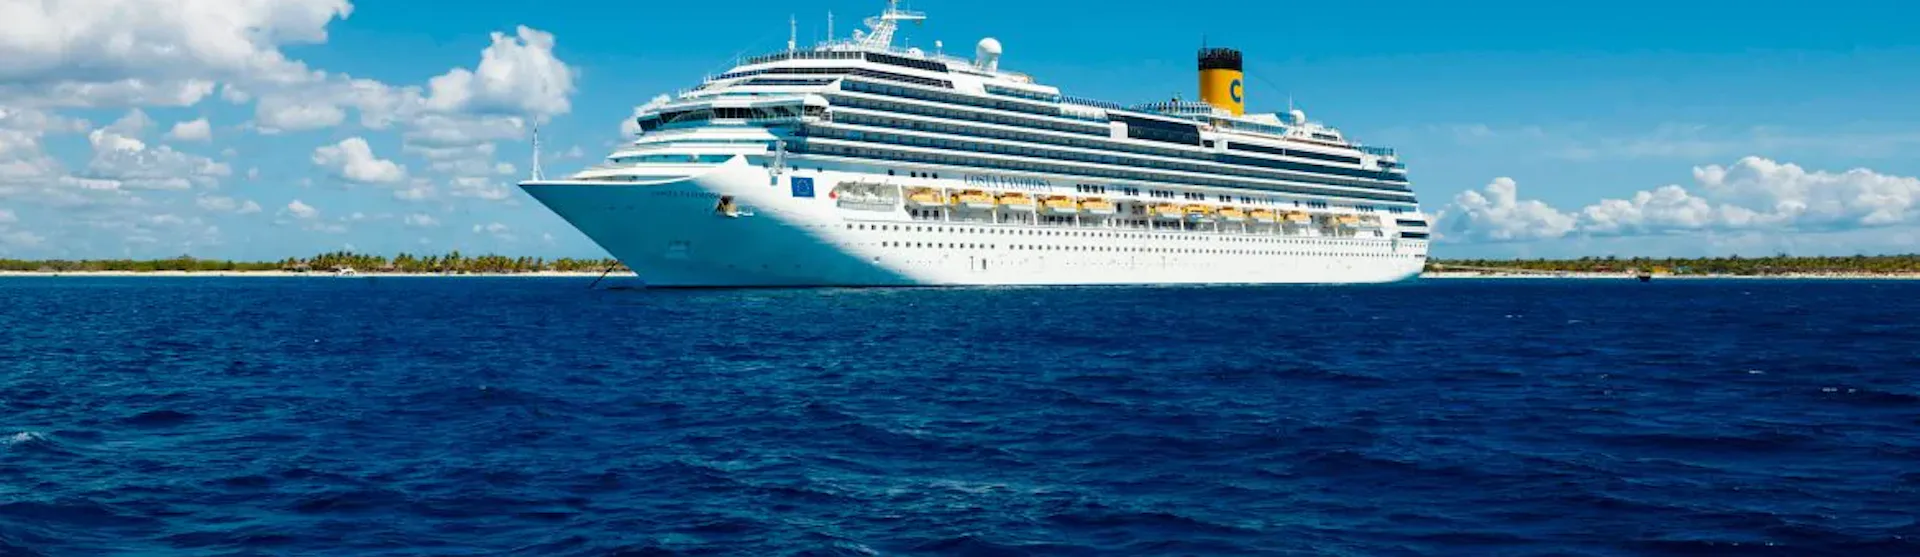 Costa Favolosa - Costa Cruises